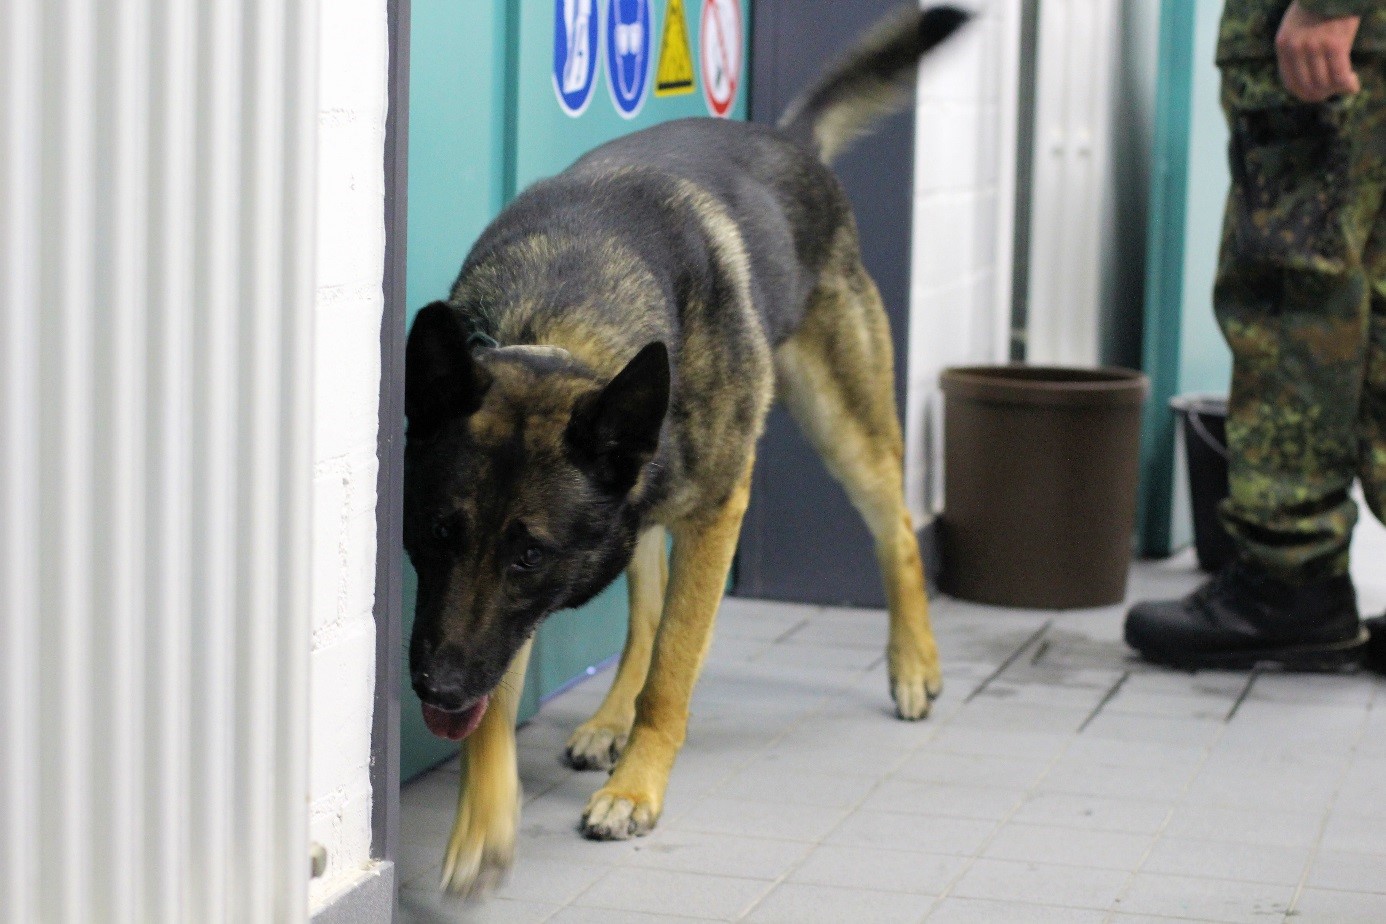 Sprengstoffspürhund beim Training in einer Innenraumlage